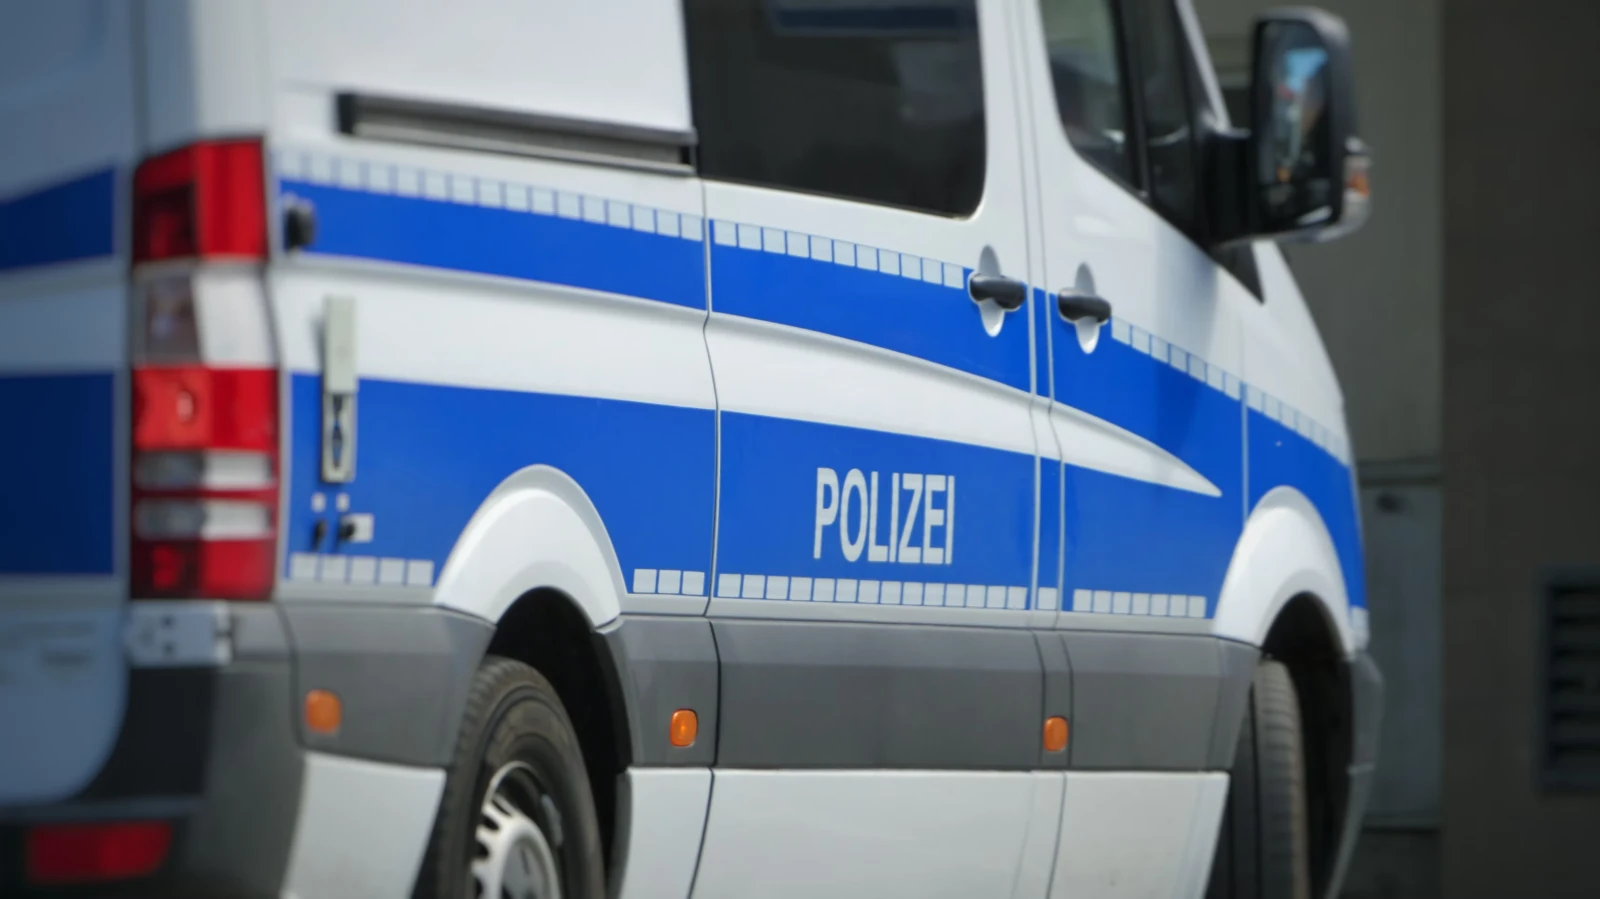 Gemeinsame Pressemitteilung der Staatsanwaltschaft Duisburg und der Polizei Duisburg - Folgemeldung